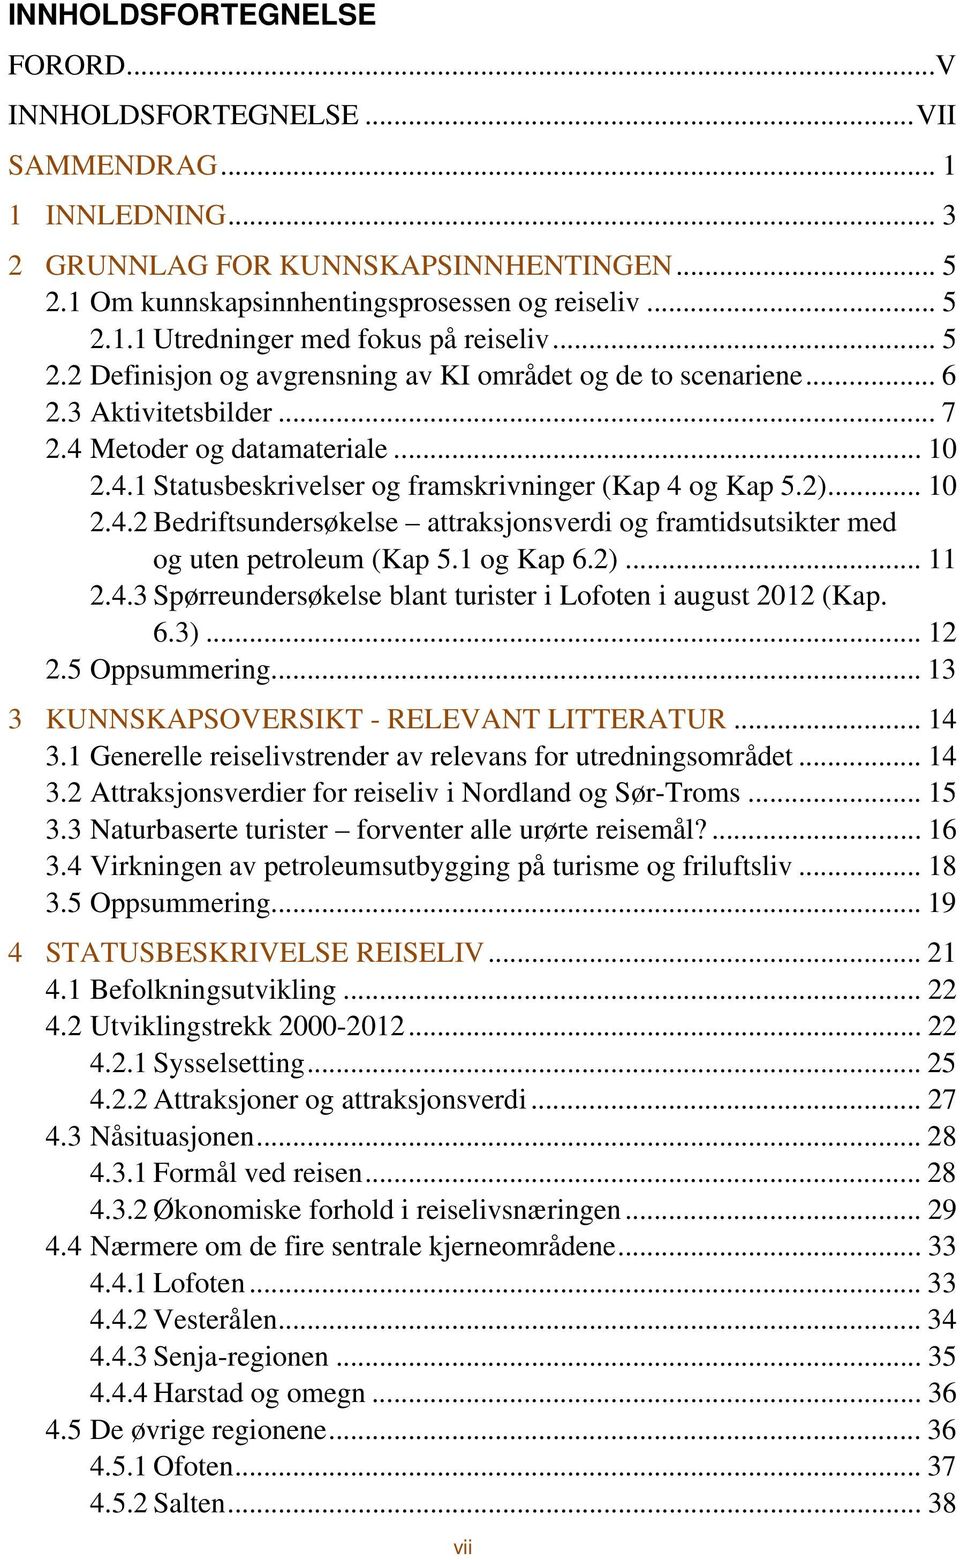 .. 10 2.4.2 Bedriftsundersøkelse attraksjonsverdi og framtidsutsikter med og uten petroleum (Kap 5.1 og Kap 6.2)... 11 2.4.3 Spørreundersøkelse blant turister i Lofoten i august 2012 (Kap. 6.3)... 12 2.